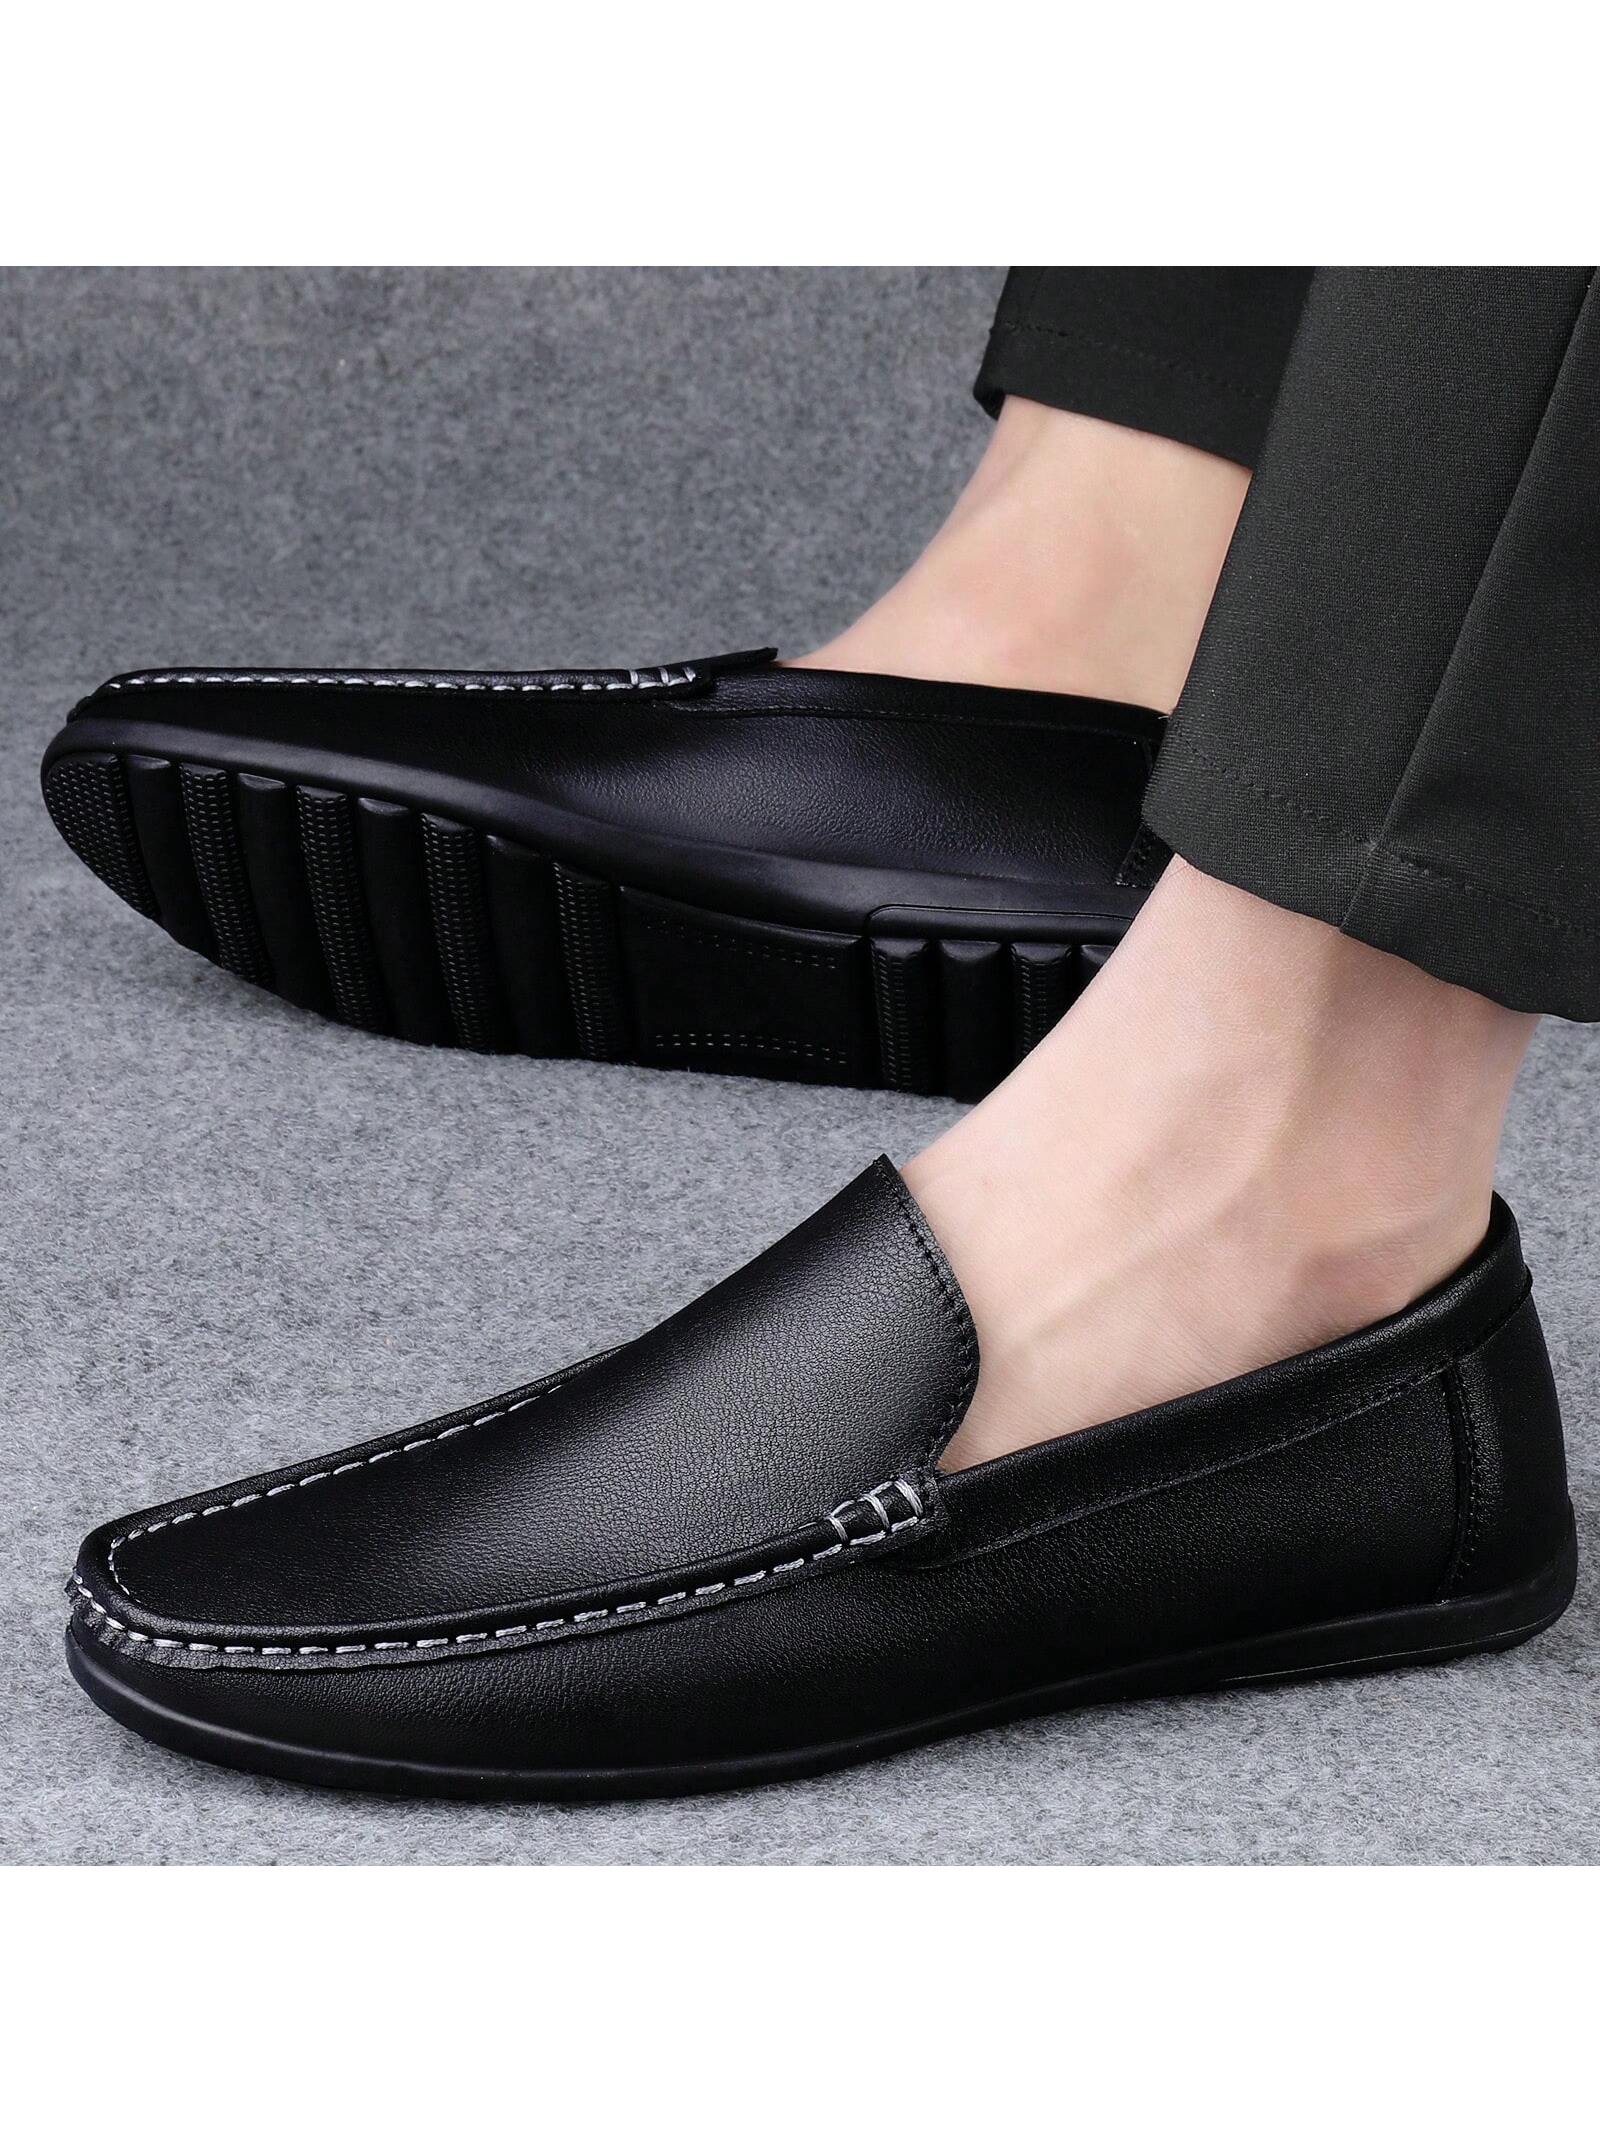 Мужские лоферы, повседневная обувь на плоской подошве, черный кроссовки женские с открытым носком повседневная обувь лоферы на плоской подошве уличная мягкая легкая прогулочная обувь